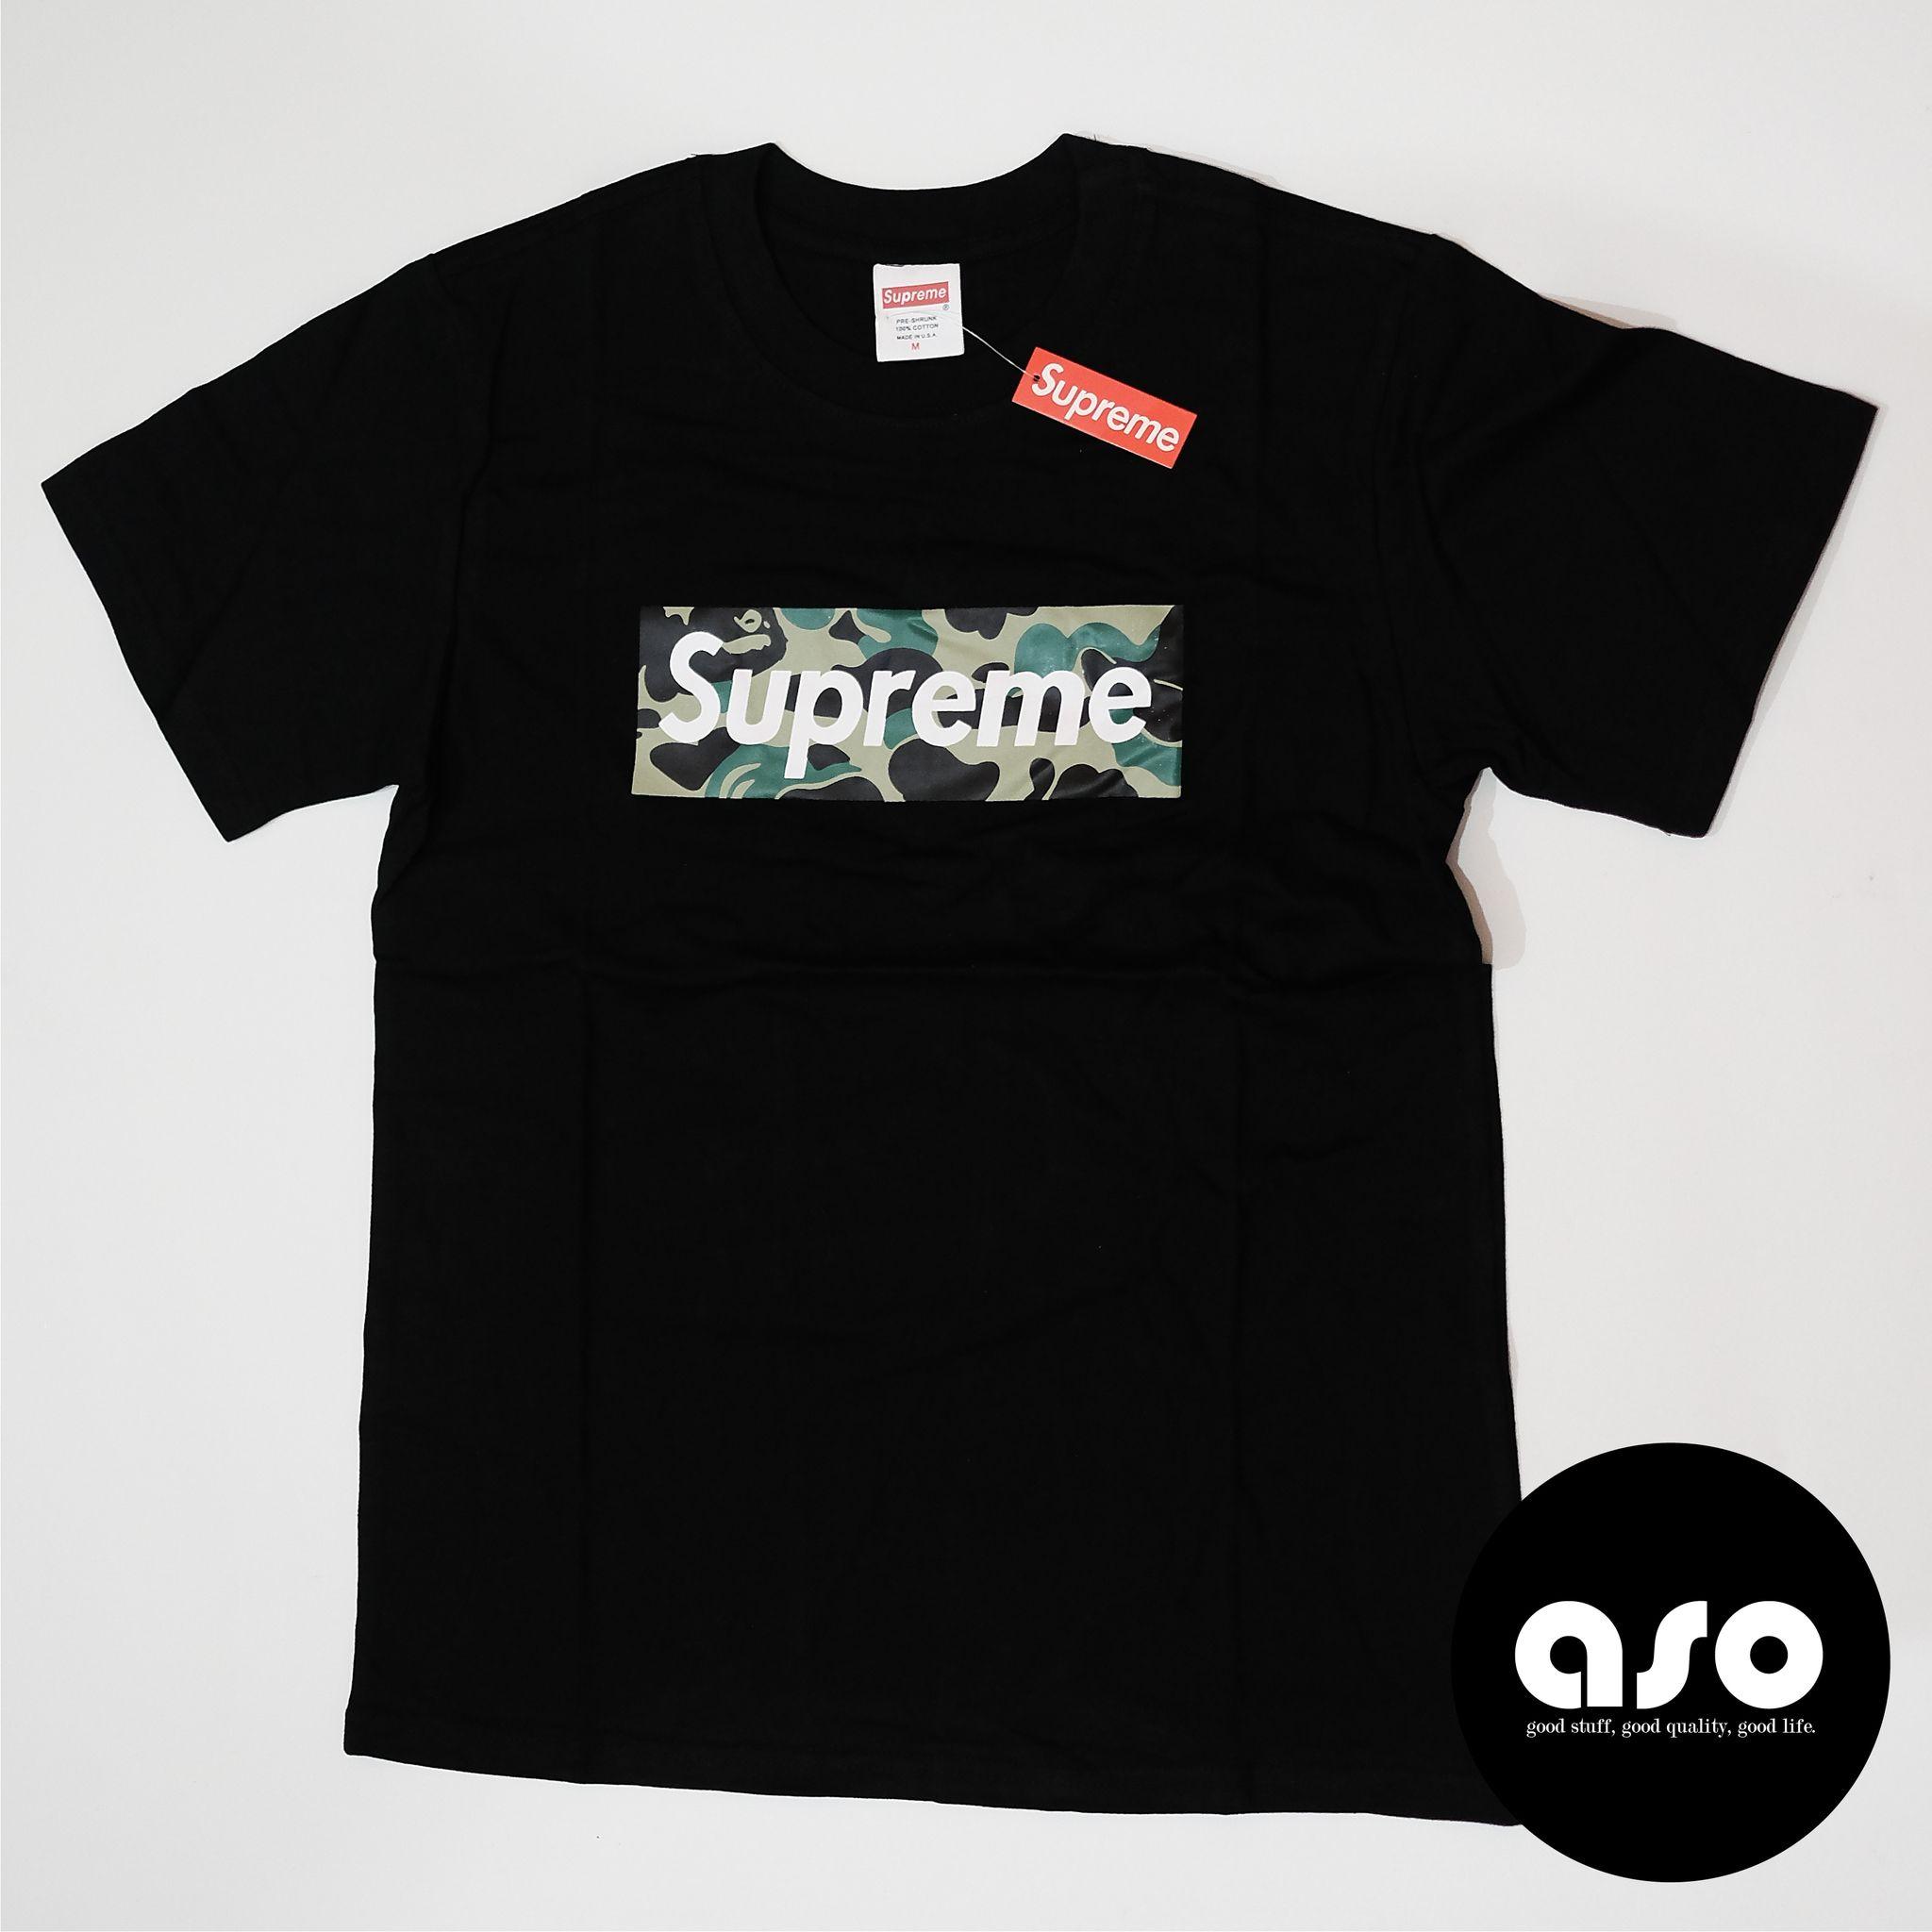 Supreme Army Logo - Jual Supreme Army Logo Box Tshirt Black.ID